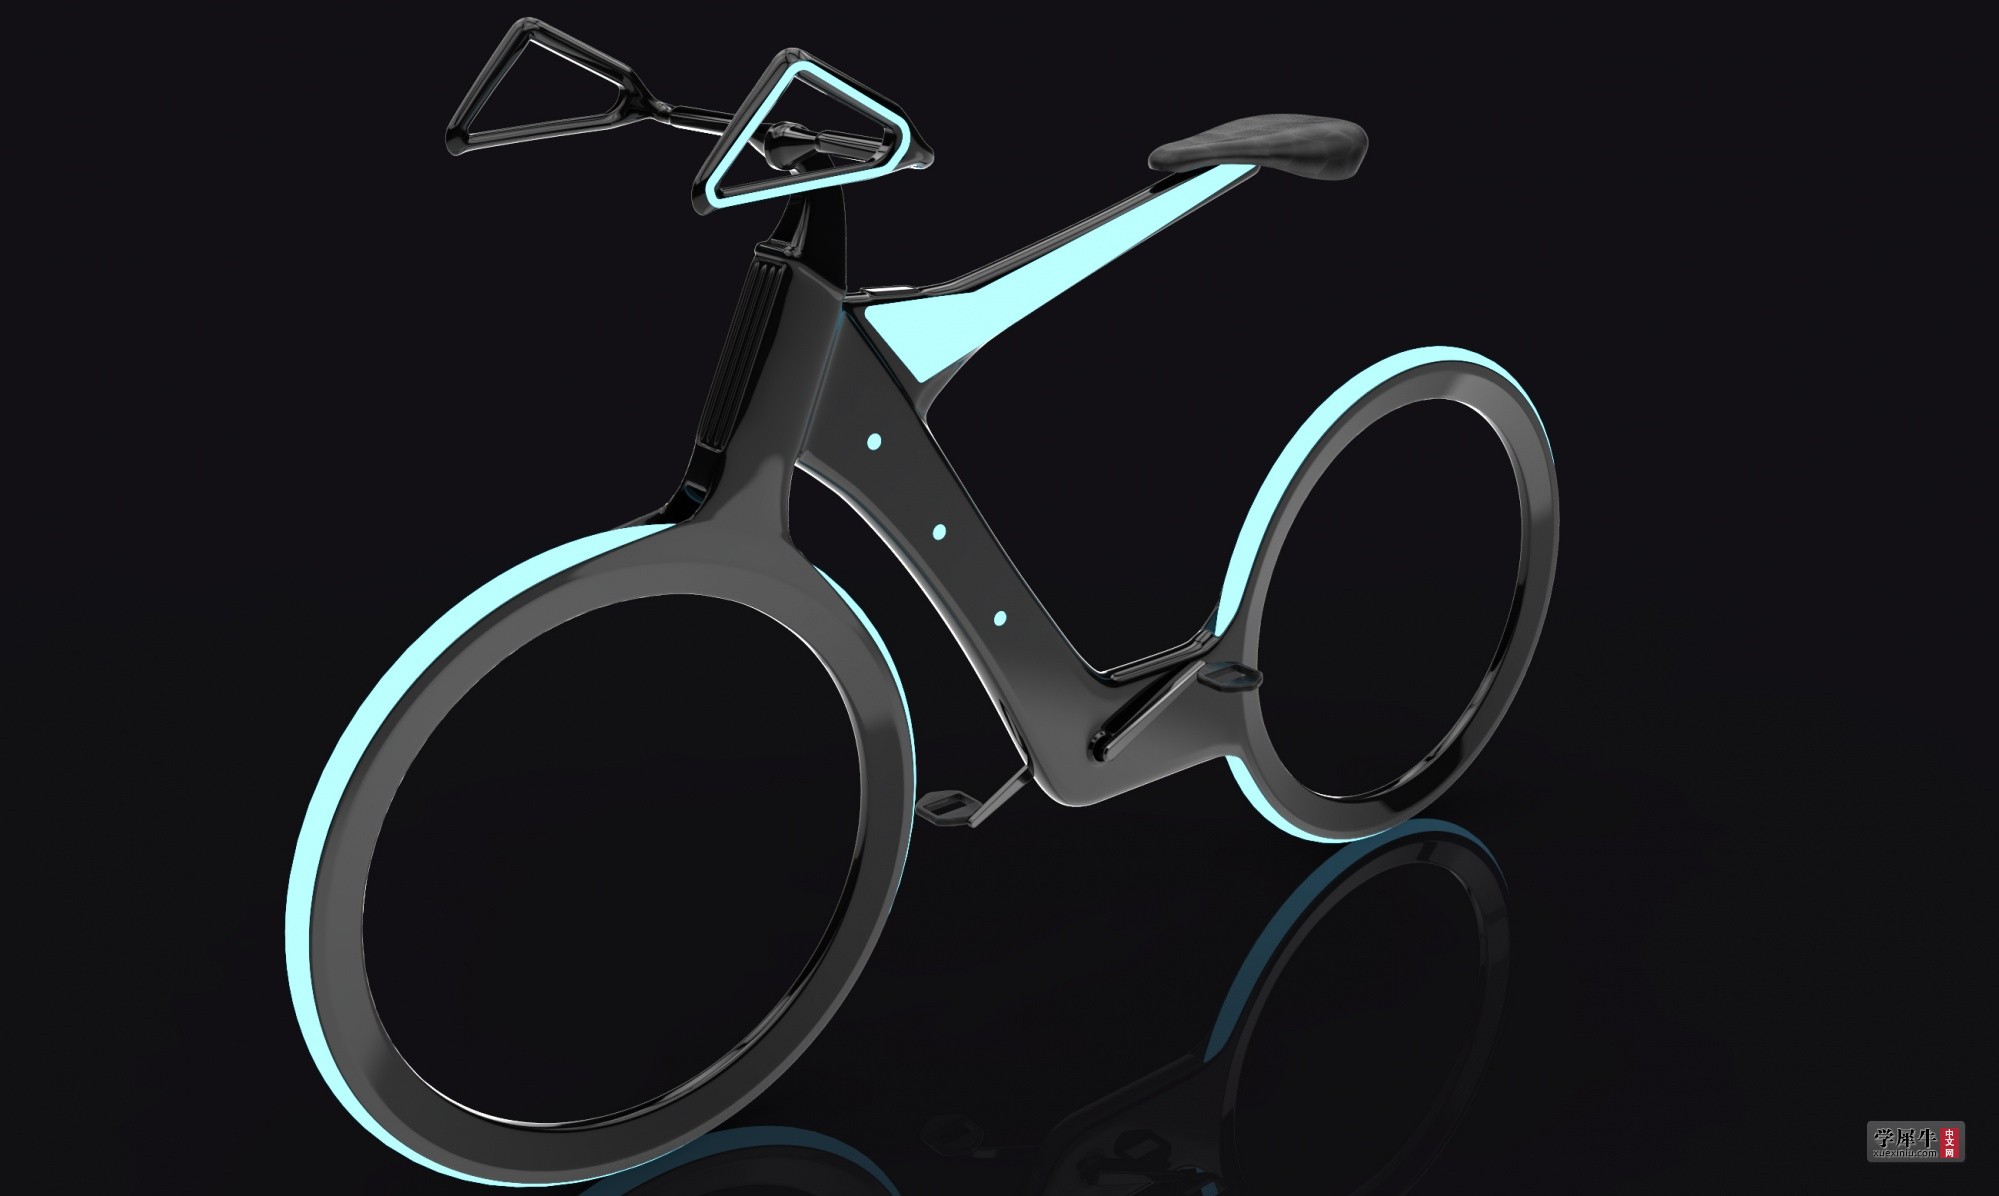 再来一个暗黑系列,概念自行车!